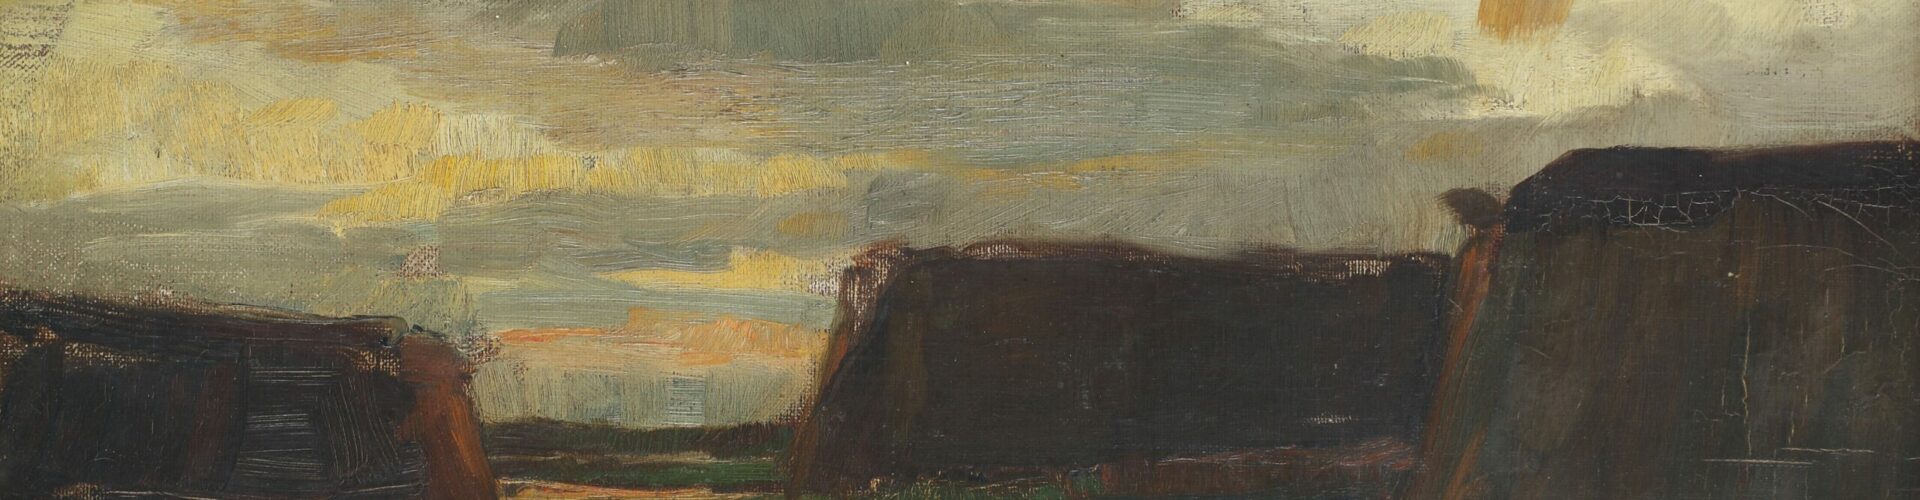 schilderij van Piet Mondriaan titel Drie hooischelven in een veld, met op de achtergrond een ondergaande zon